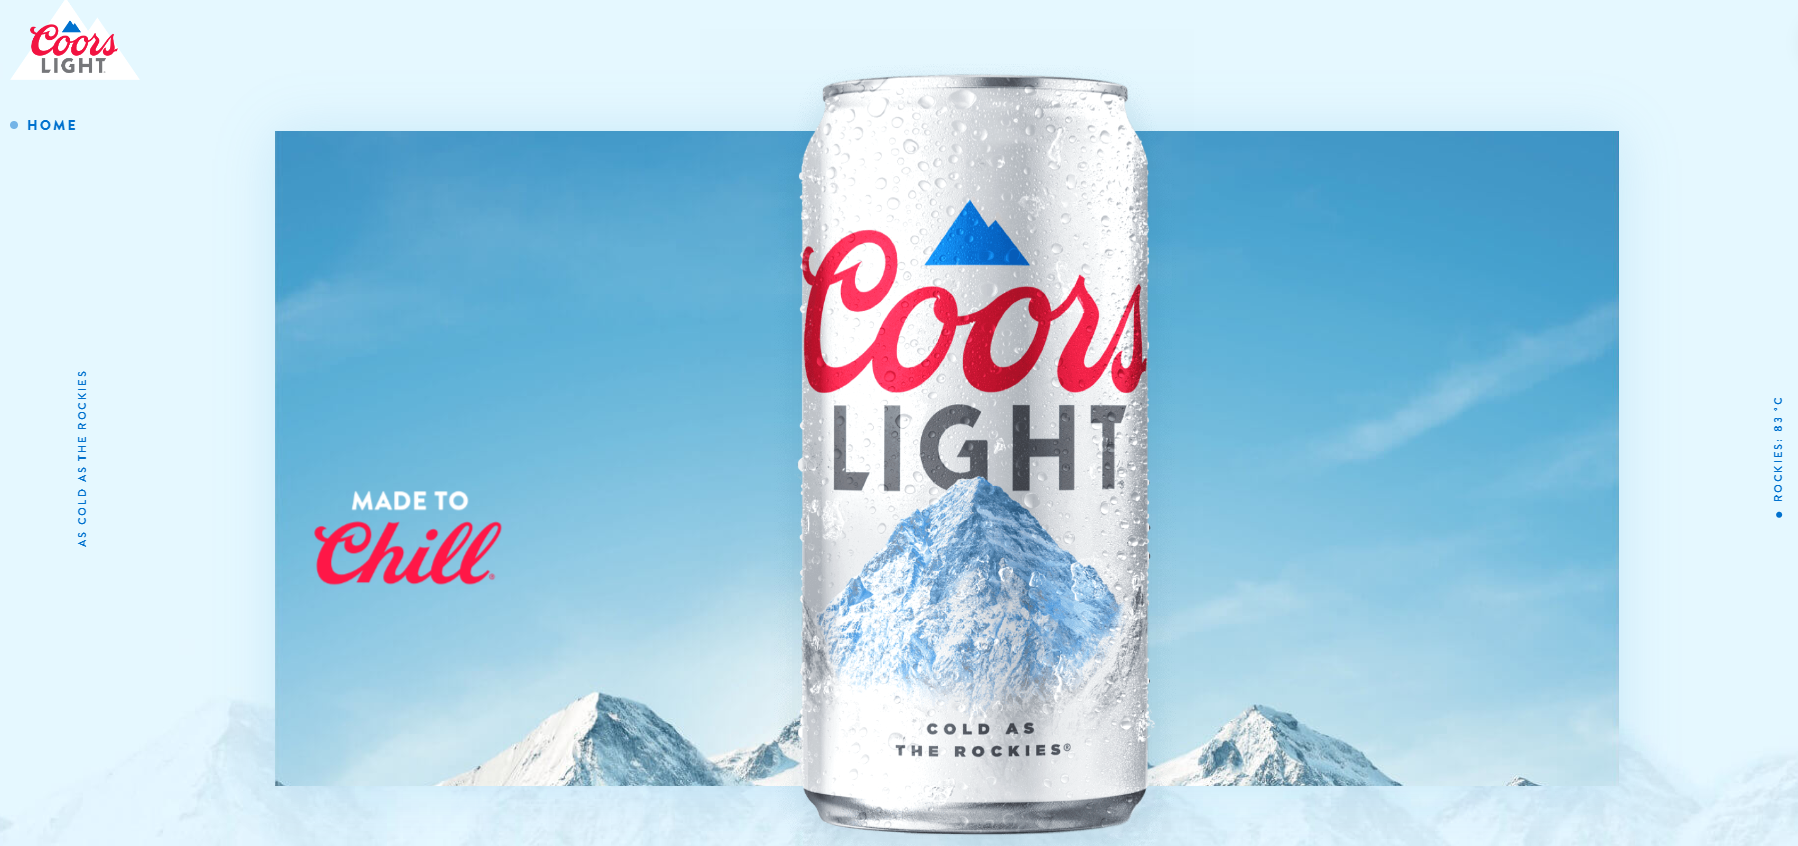 يدعي Coors Light أن البيرة الخاصة بهم باردة مثل جبال روكي.